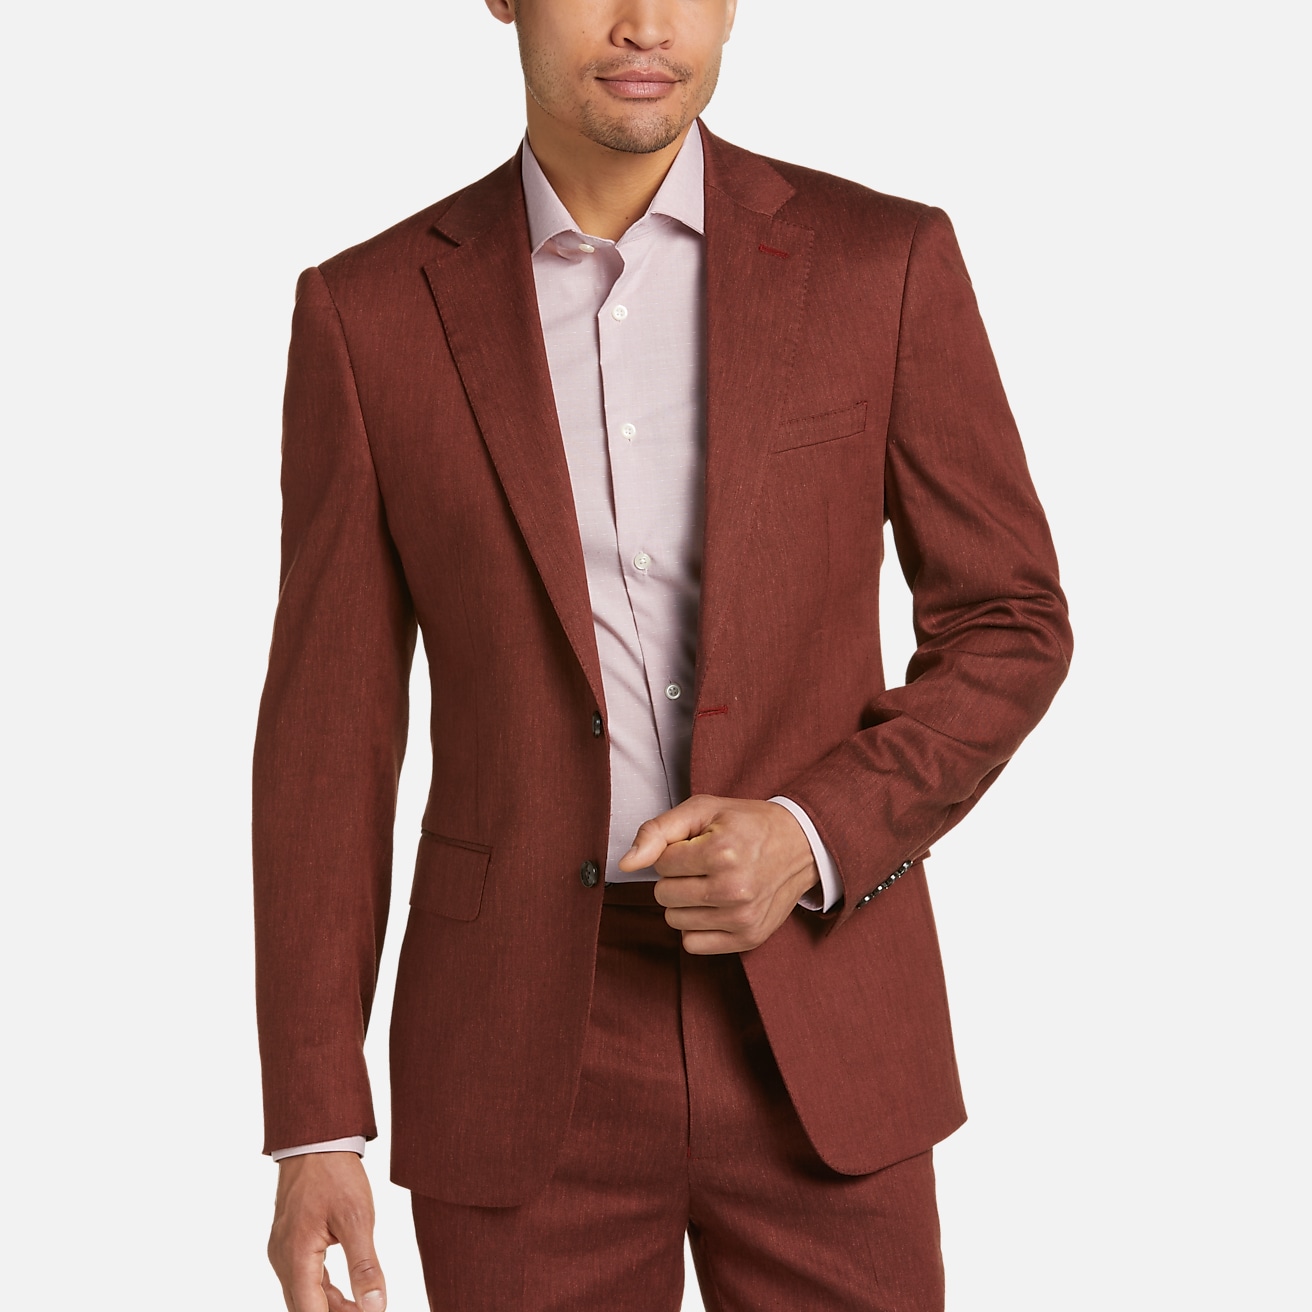 Jos. A. Bank Slim Fit Linen Blend Suit Separates Vest